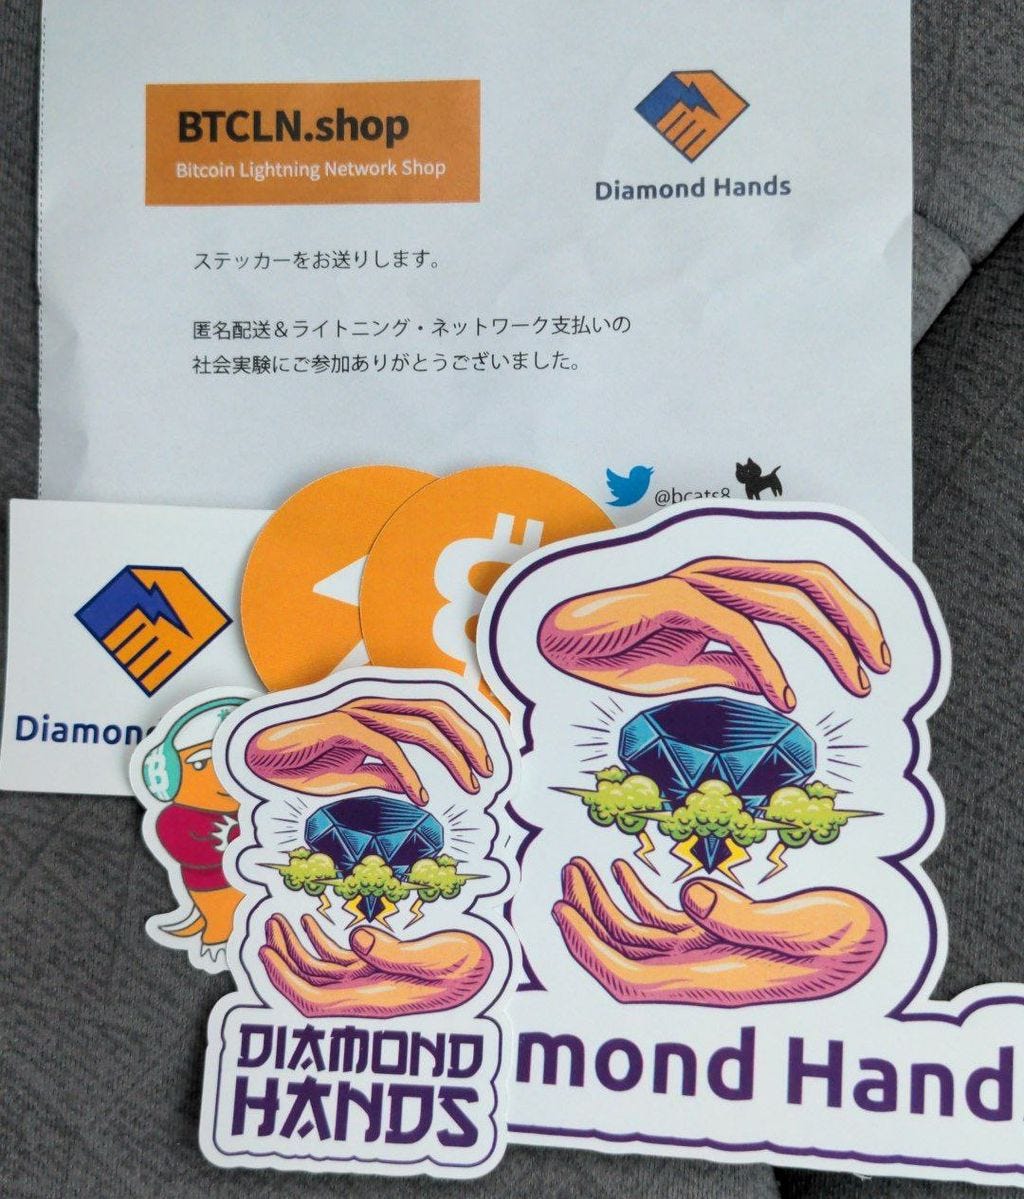 7月20日Diamond Handsミートアップ開催【Diamond Hands一周年】